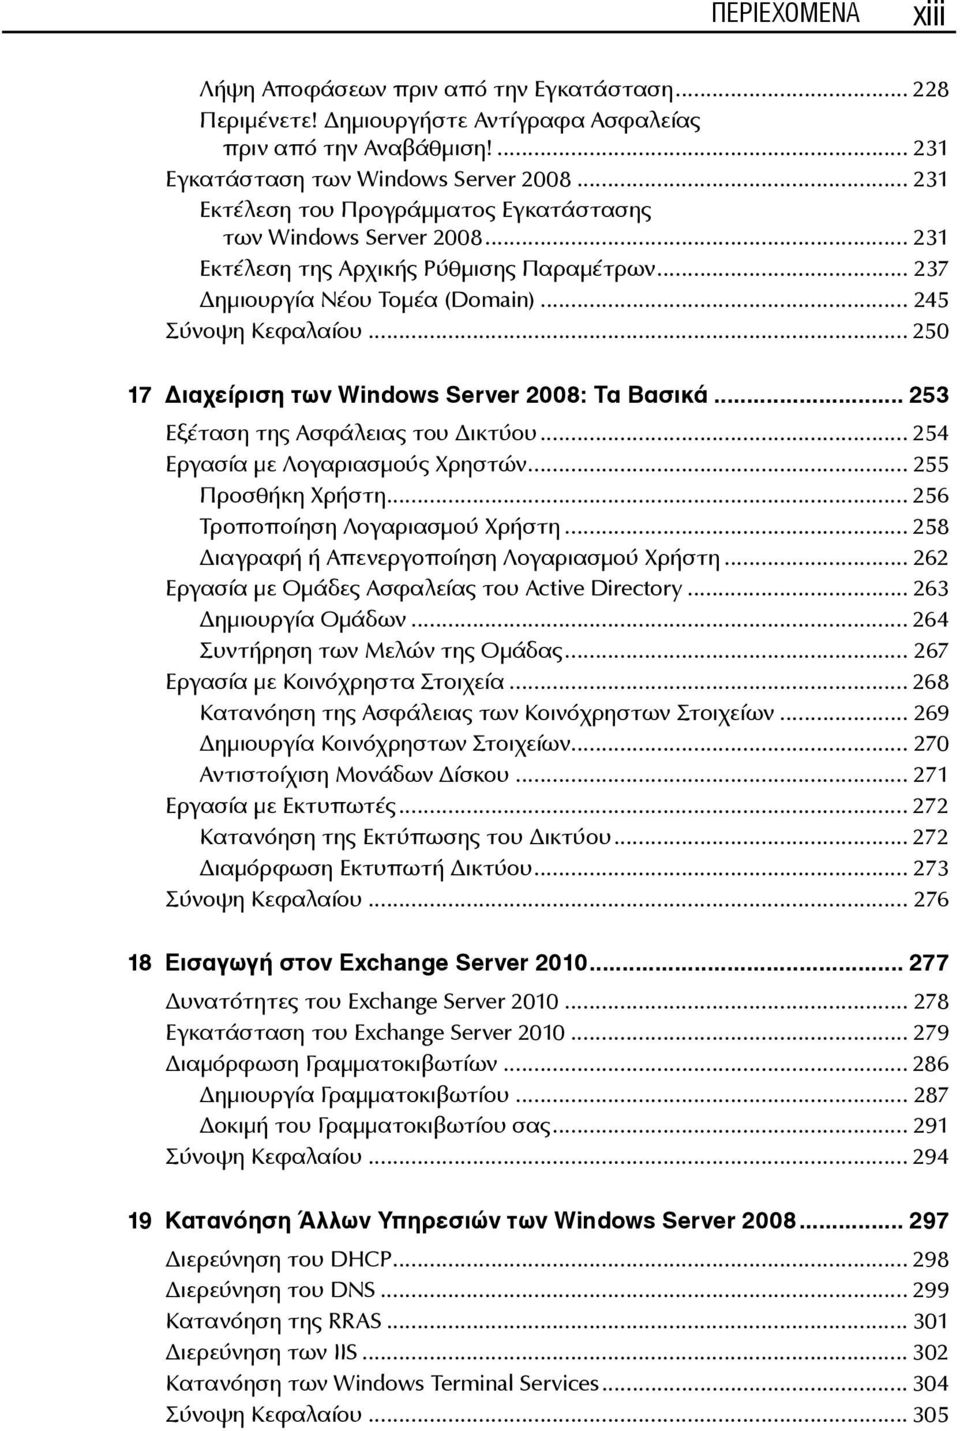 .. 250 17 ιαχείριση των Windows Server 2008: Τα Βασικά... 253 Εξέταση της Ασφάλειας του ικτύου... 254 Εργασία με Λογαριασμούς Χρηστών... 255 Προσθήκη Χρήστη... 256 Τροποποίηση Λογαριασμού Χρήστη.